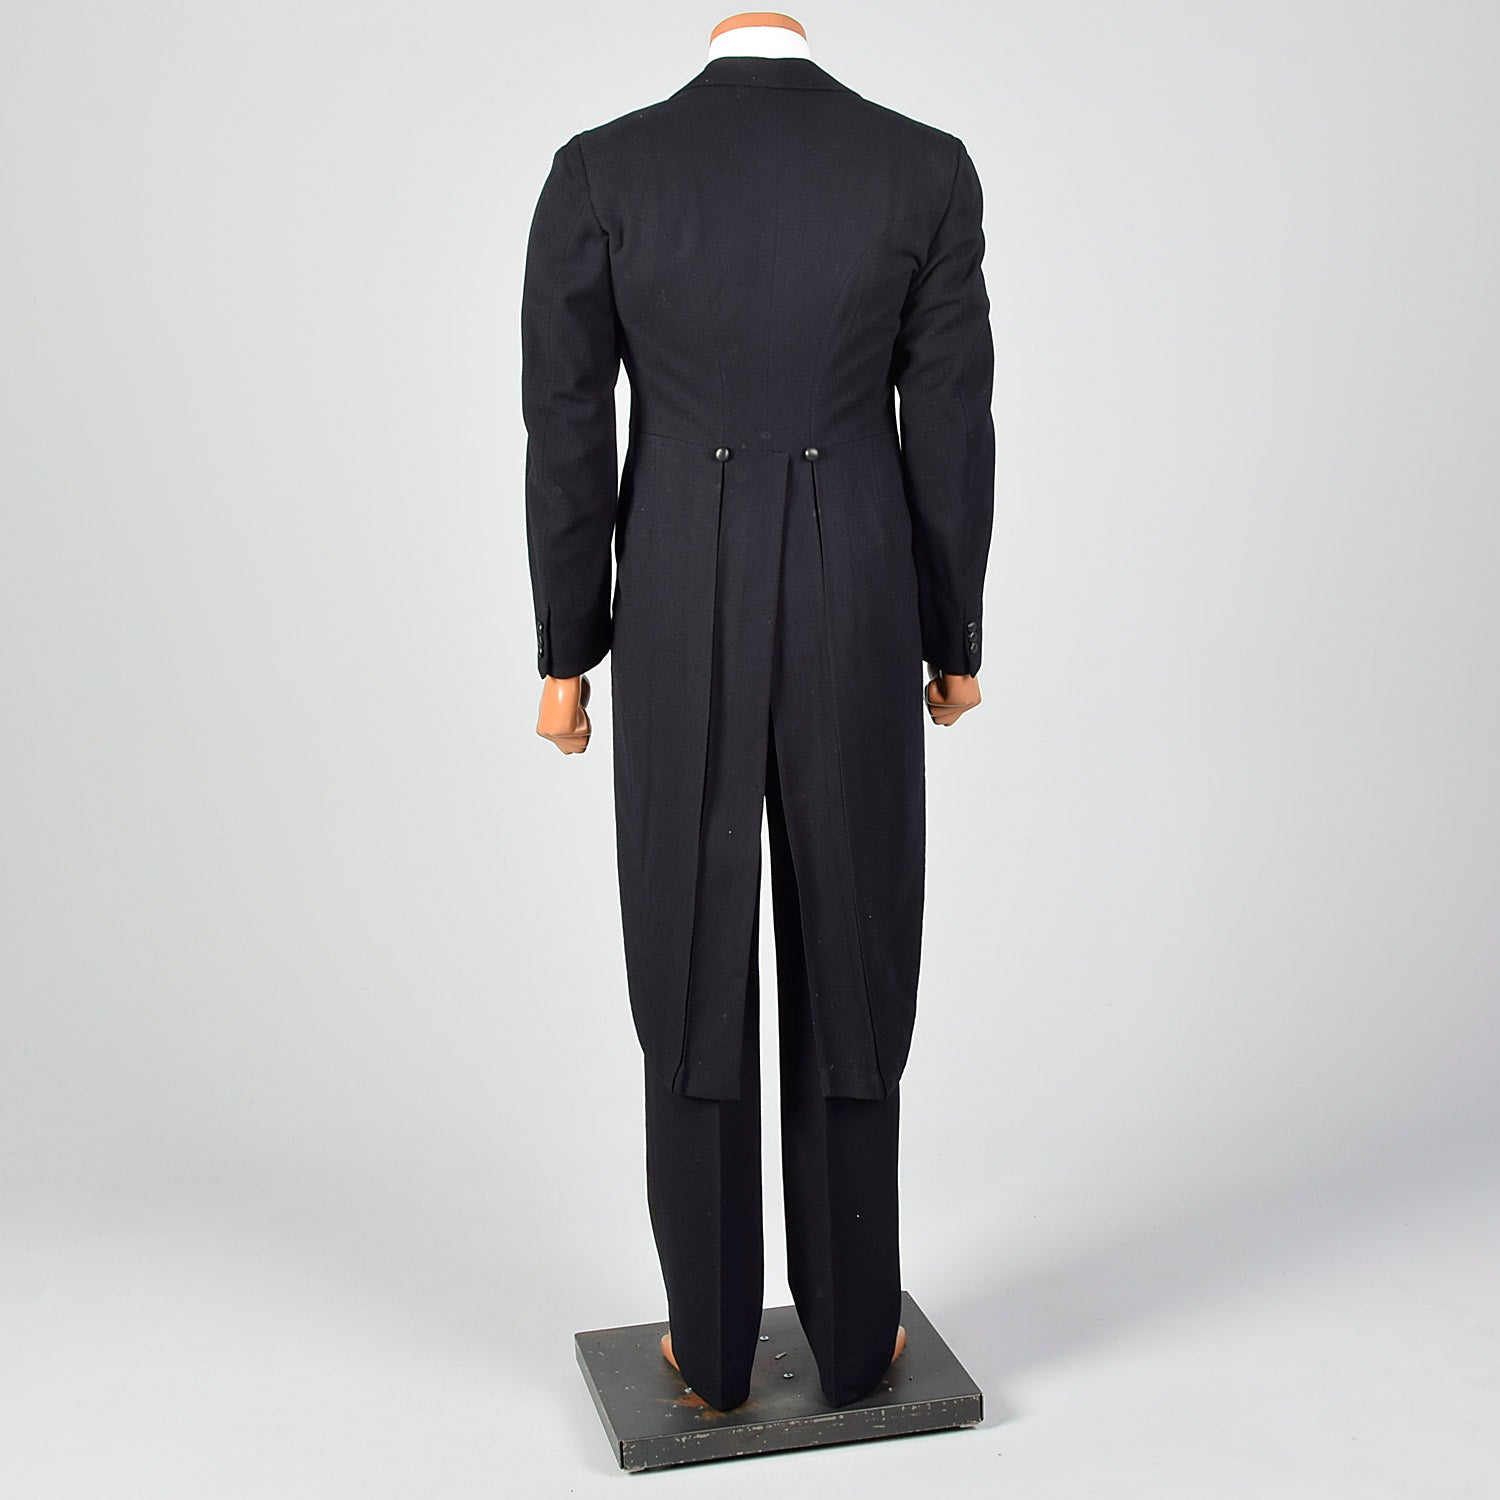 38 1930s Tuxedo Black Wool White Tie Swallowtail Coat